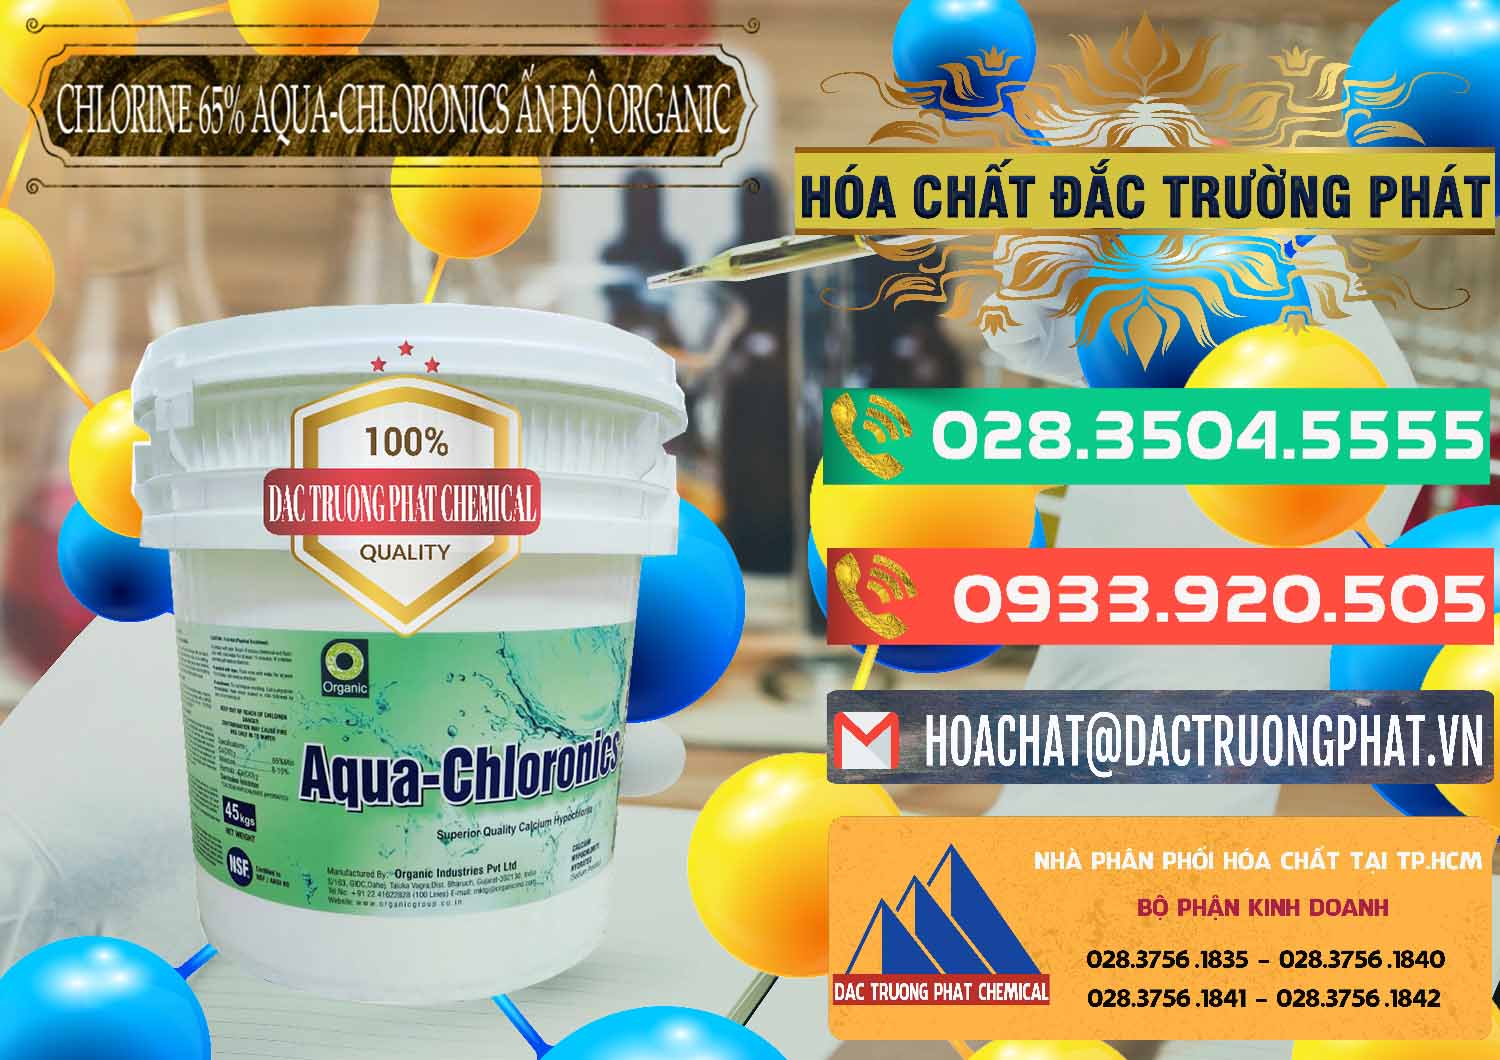 Nơi bán và phân phối Chlorine – Clorin 65% Aqua-Chloronics Ấn Độ Organic India - 0210 - Nhà cung cấp & phân phối hóa chất tại TP.HCM - congtyhoachat.com.vn